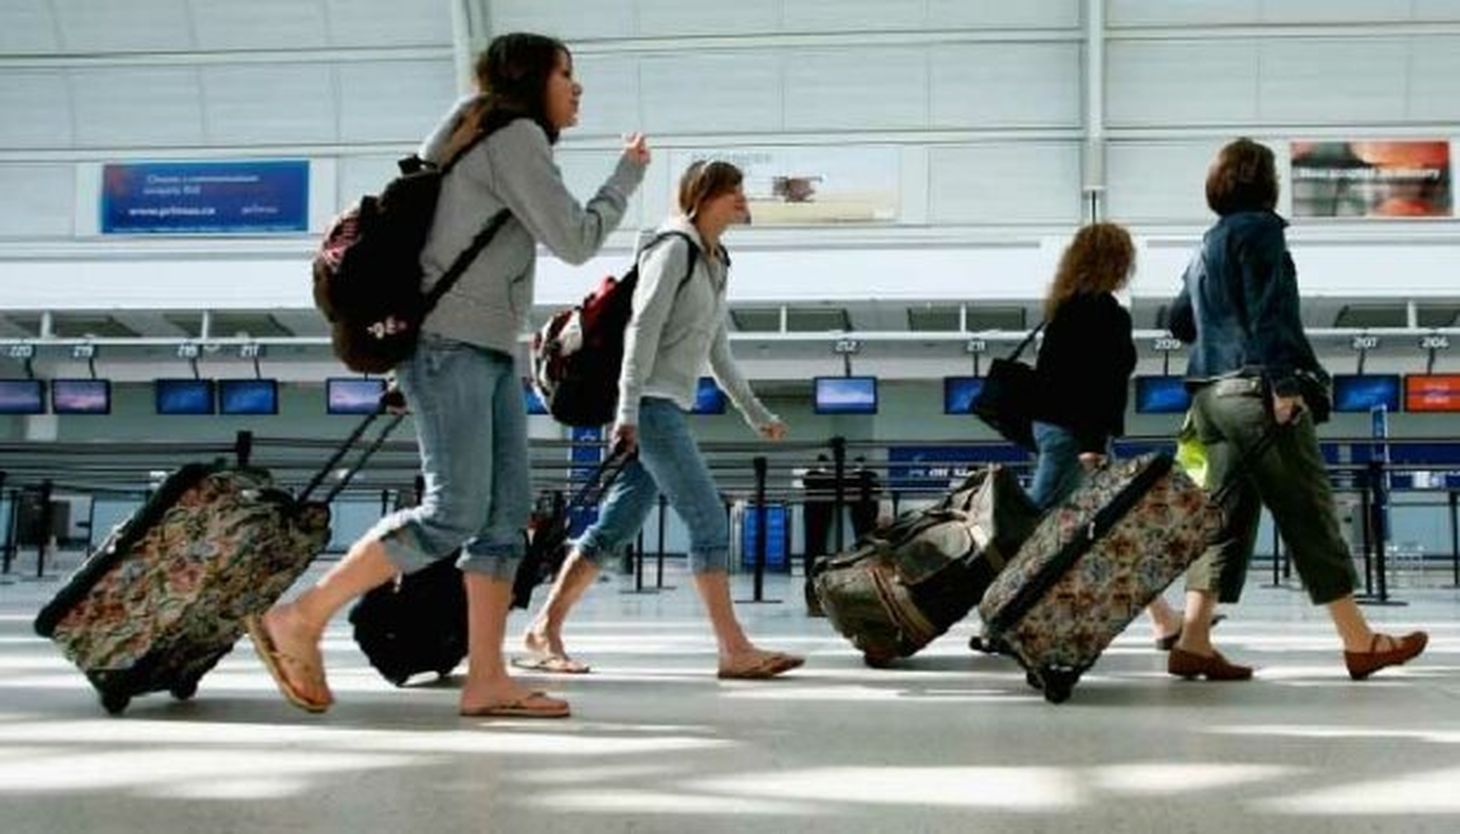 И многое другое приезжайте. Туристы в аэропорту. Люди с чемоданами в аэропорту. Путешественник в аэропорту. Отдыхающие в аэропорту.